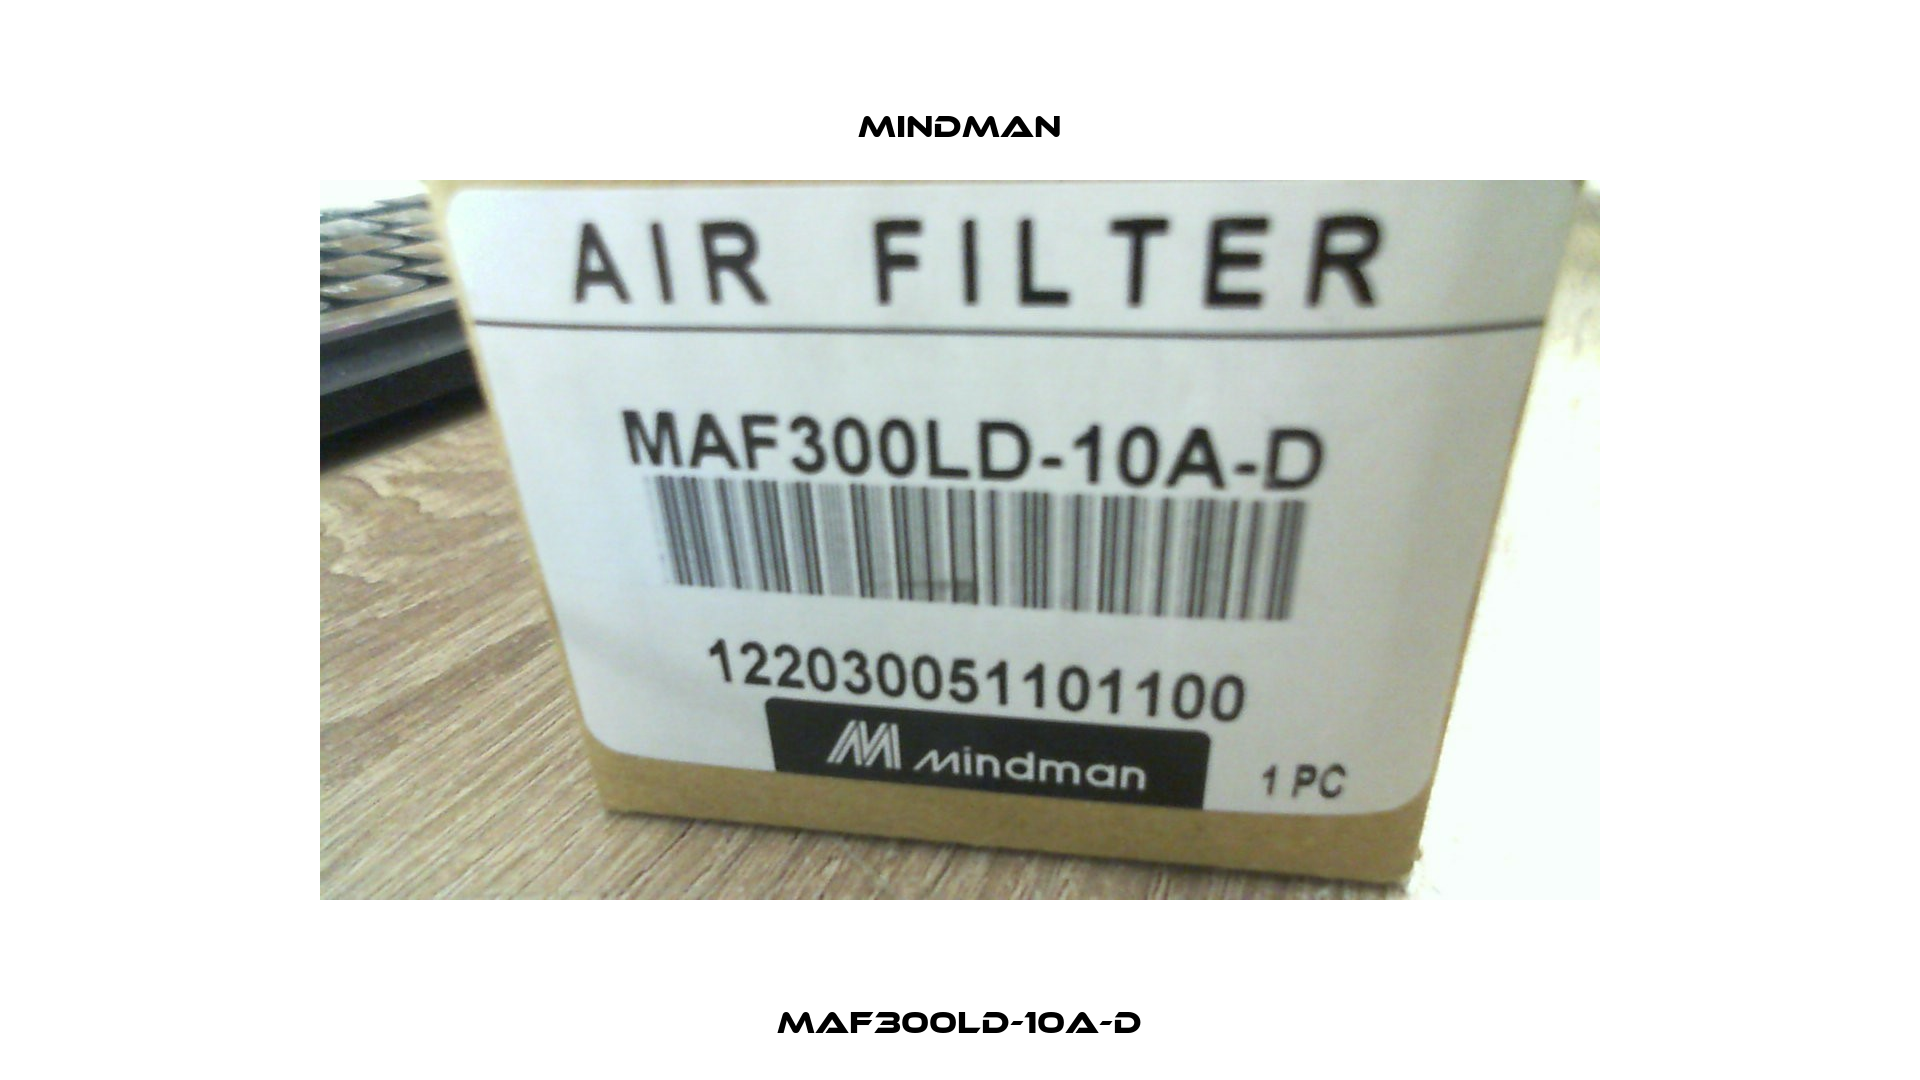 MAF300LD-10A-D Mindman